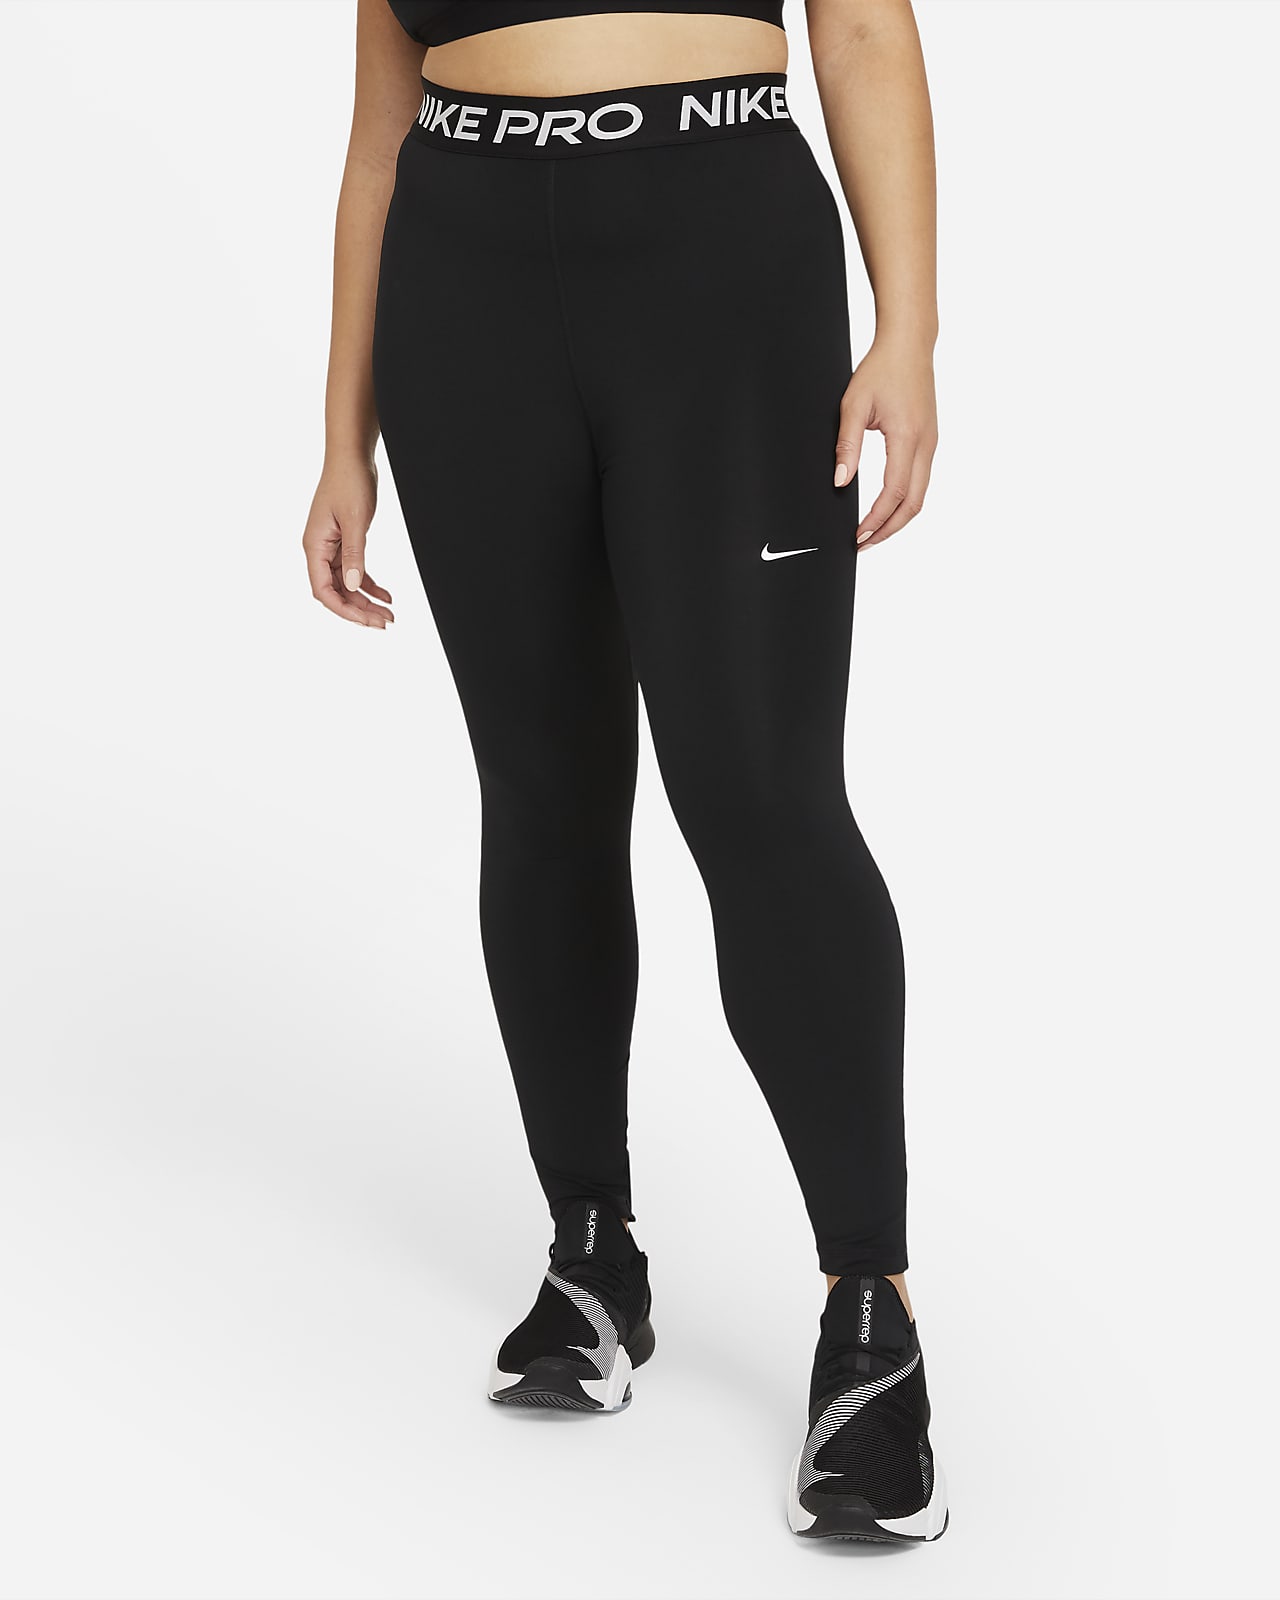 No puedo revolución Almeja Nike Pro 365 Leggings (Talla grande) - Mujer. Nike ES